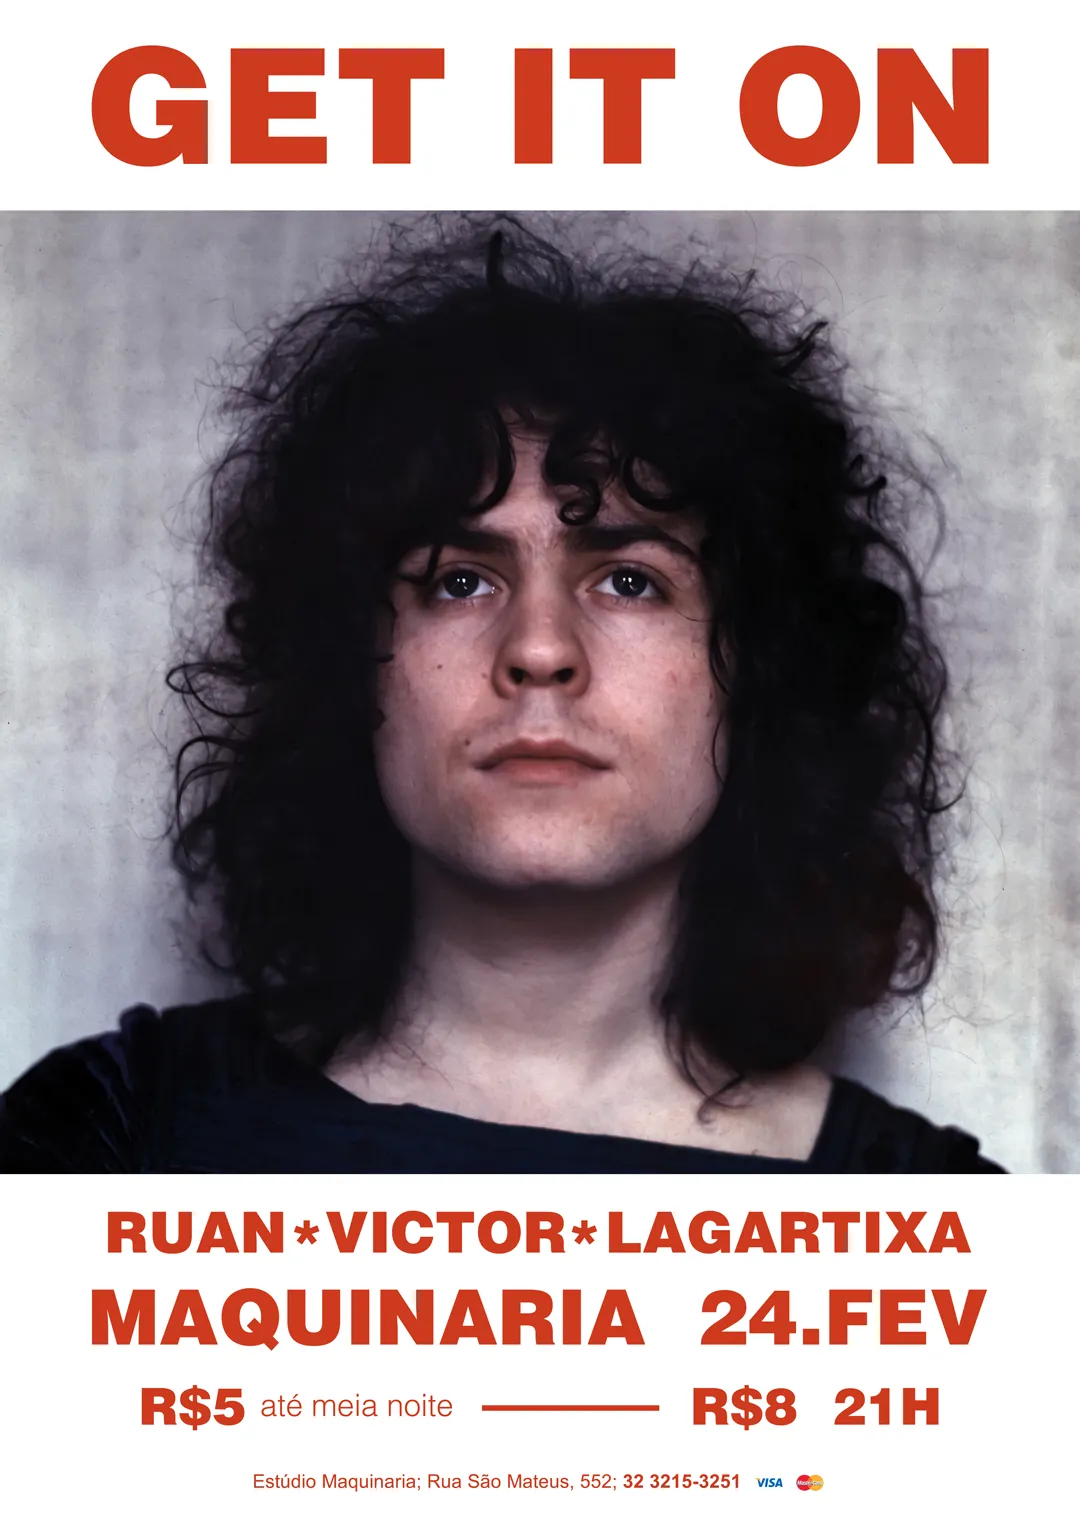 Get It On Foto de Marc Bolan tirada por Michael Putland.Ruan Victor Lagartixa. Maquinaria. 24 fev. R$5 21h